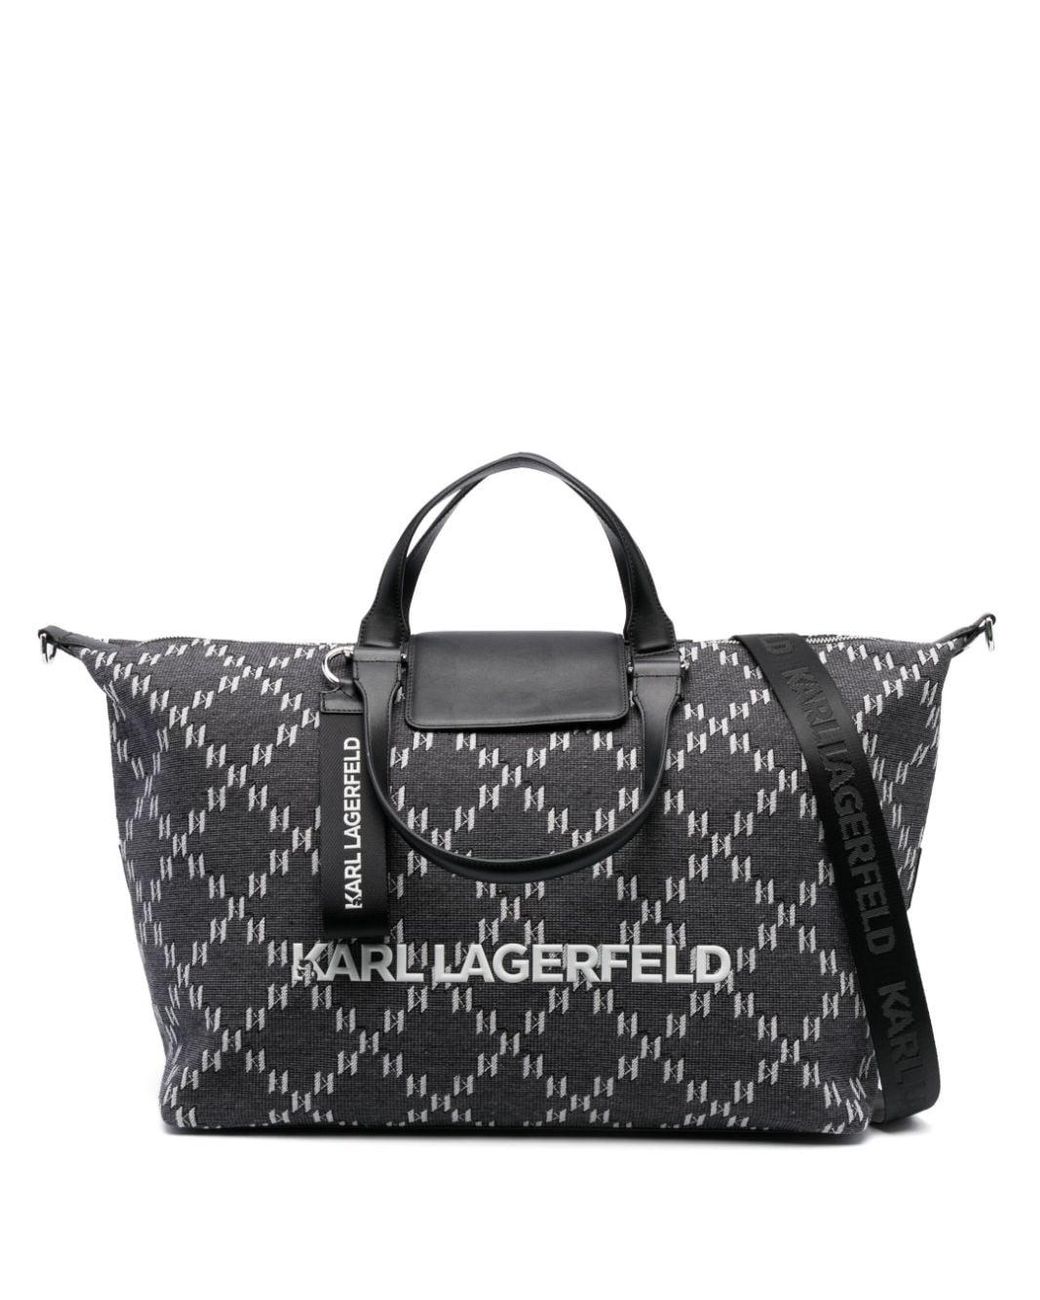 Karl Lagerfeld monogram-print Backpack - Black